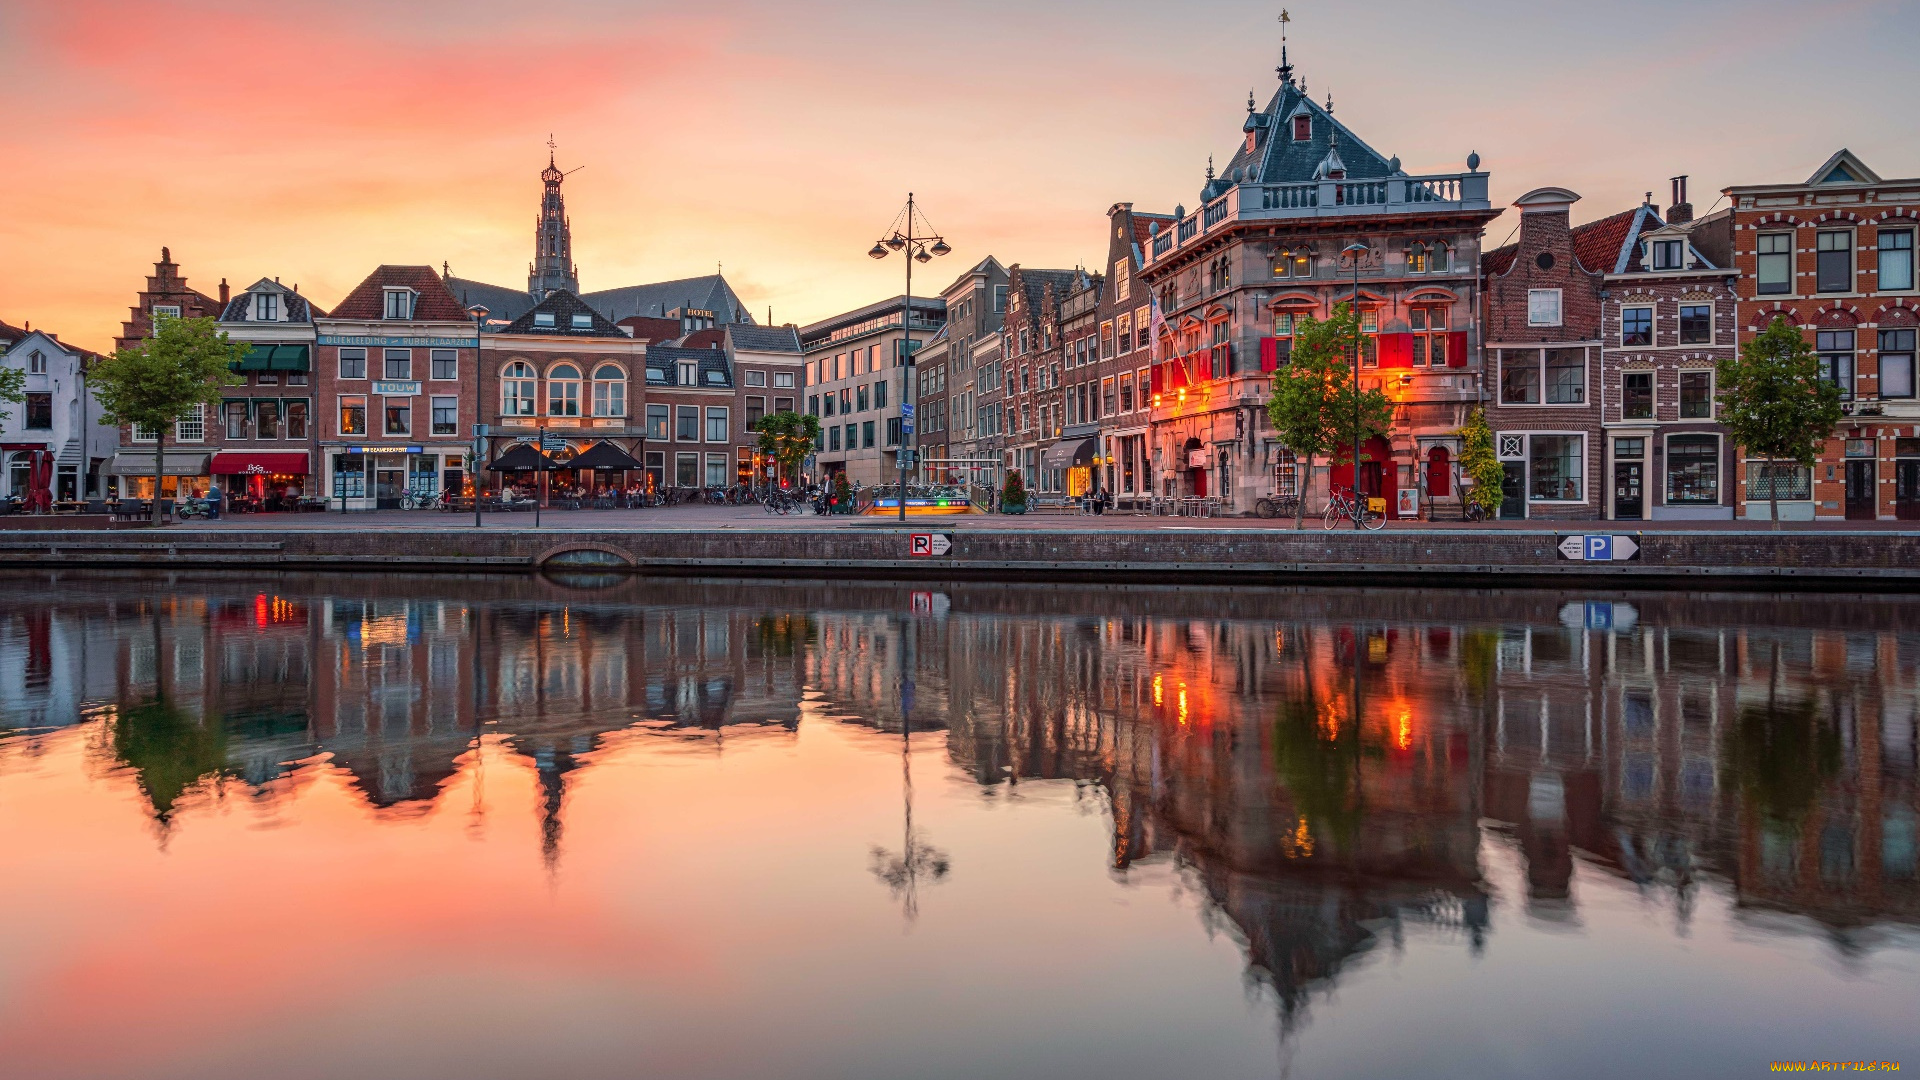 города, -, улицы, , площади, , набережные, нидерланды, городской, вид, отражение, вода, здания, набережная